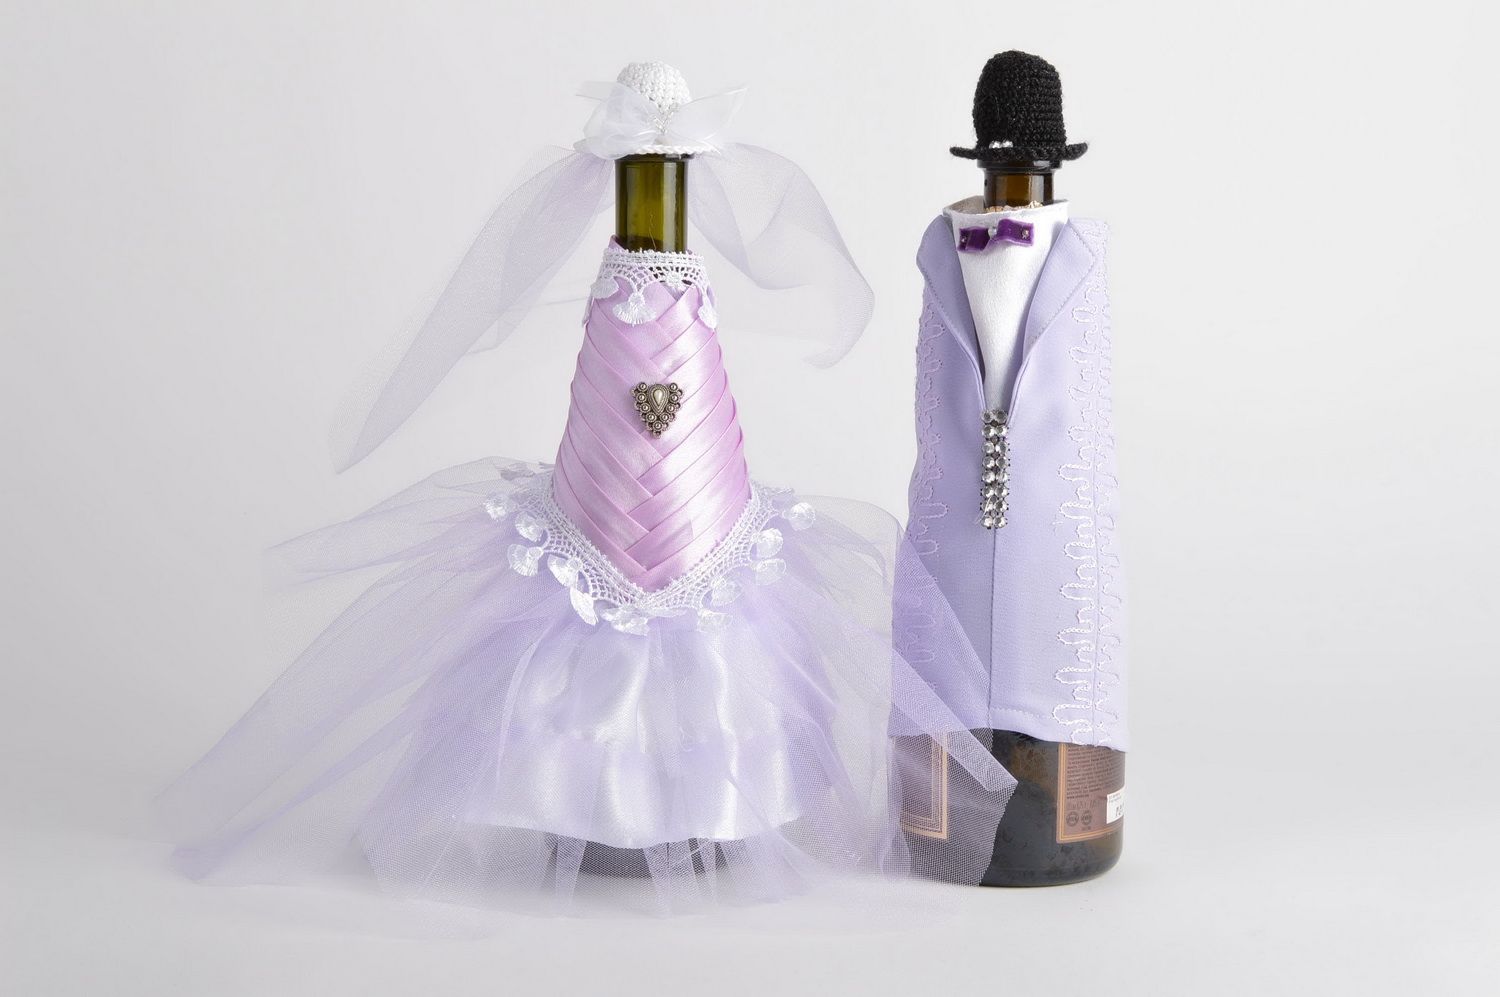 Одежда жениха и невесты на бутылки шампанского набор из 2 нардов хэнд мэйд фото 1